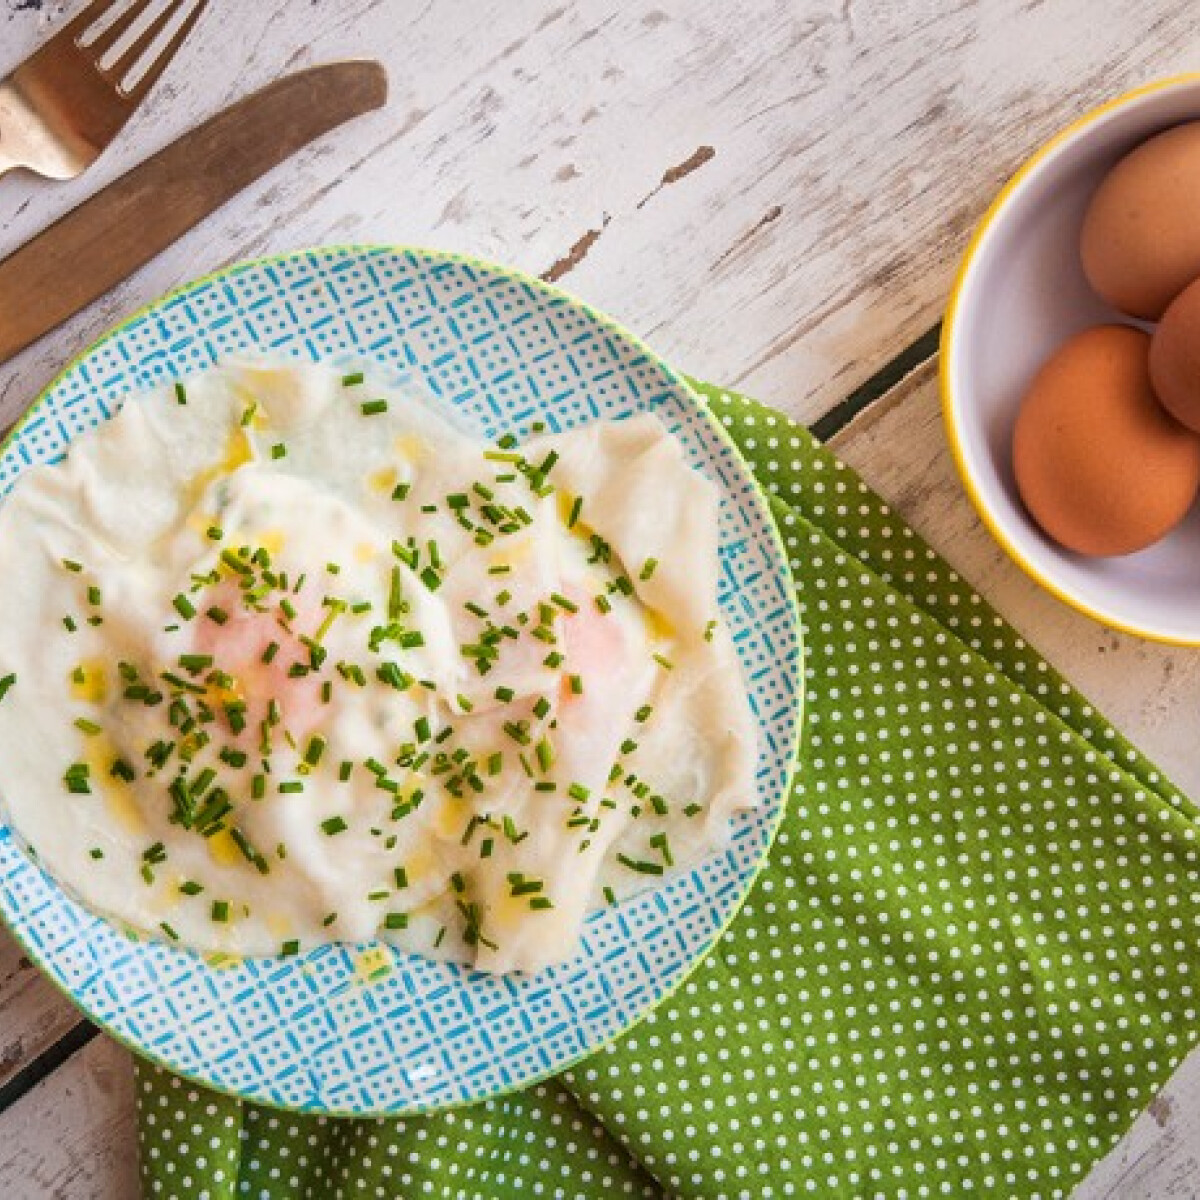 Tökéletes előétel – készíts tojásraviolit!